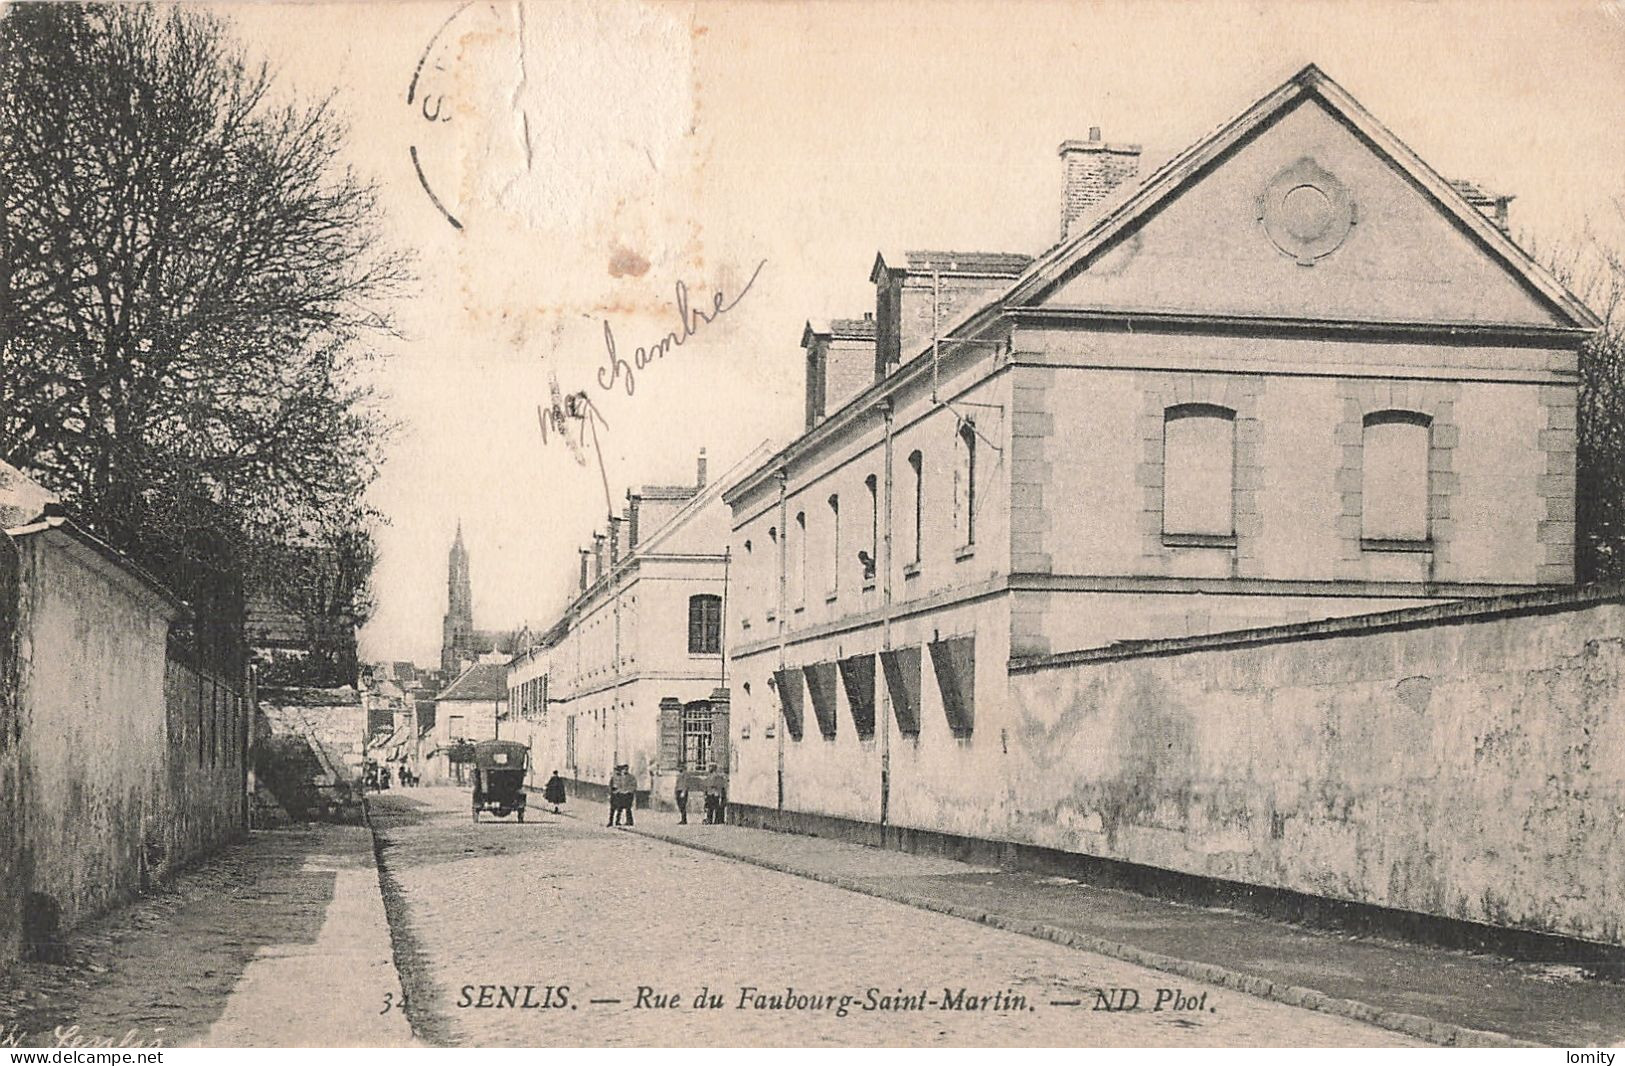 Destockage lot de 48 cartes postales CPA de l' Oise Chantilly Pont Sainte Maxence Beauvais Creil Noyon Compiegne Boran